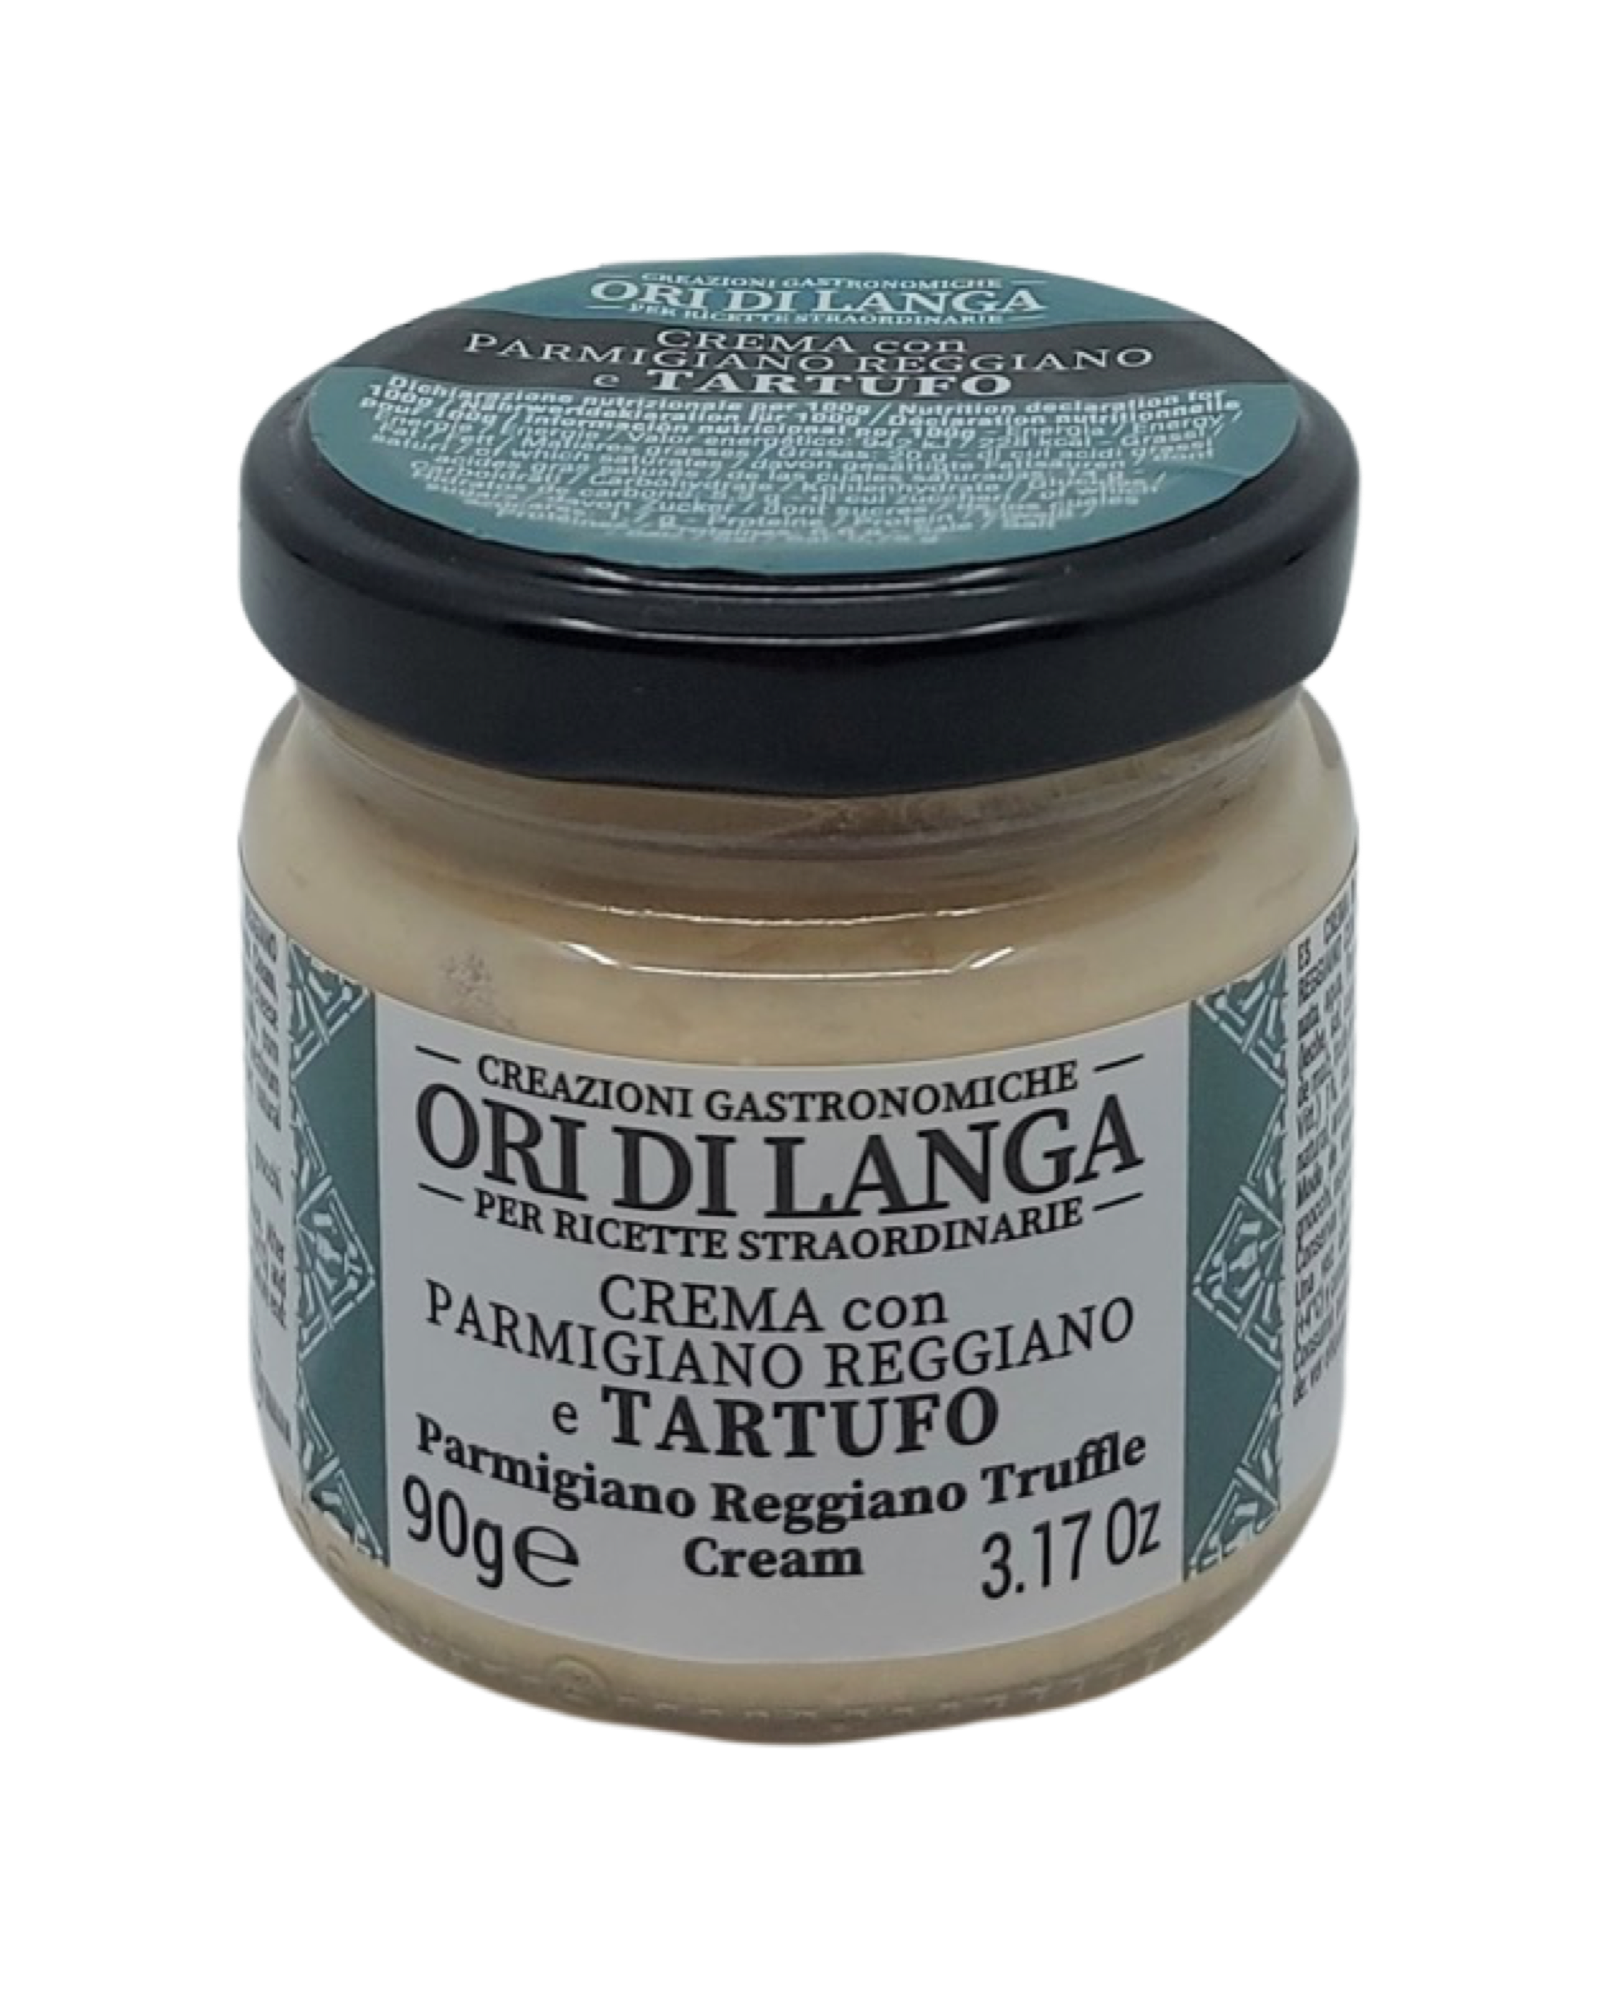 Parmigiano Reggiano truffle cream (90g)